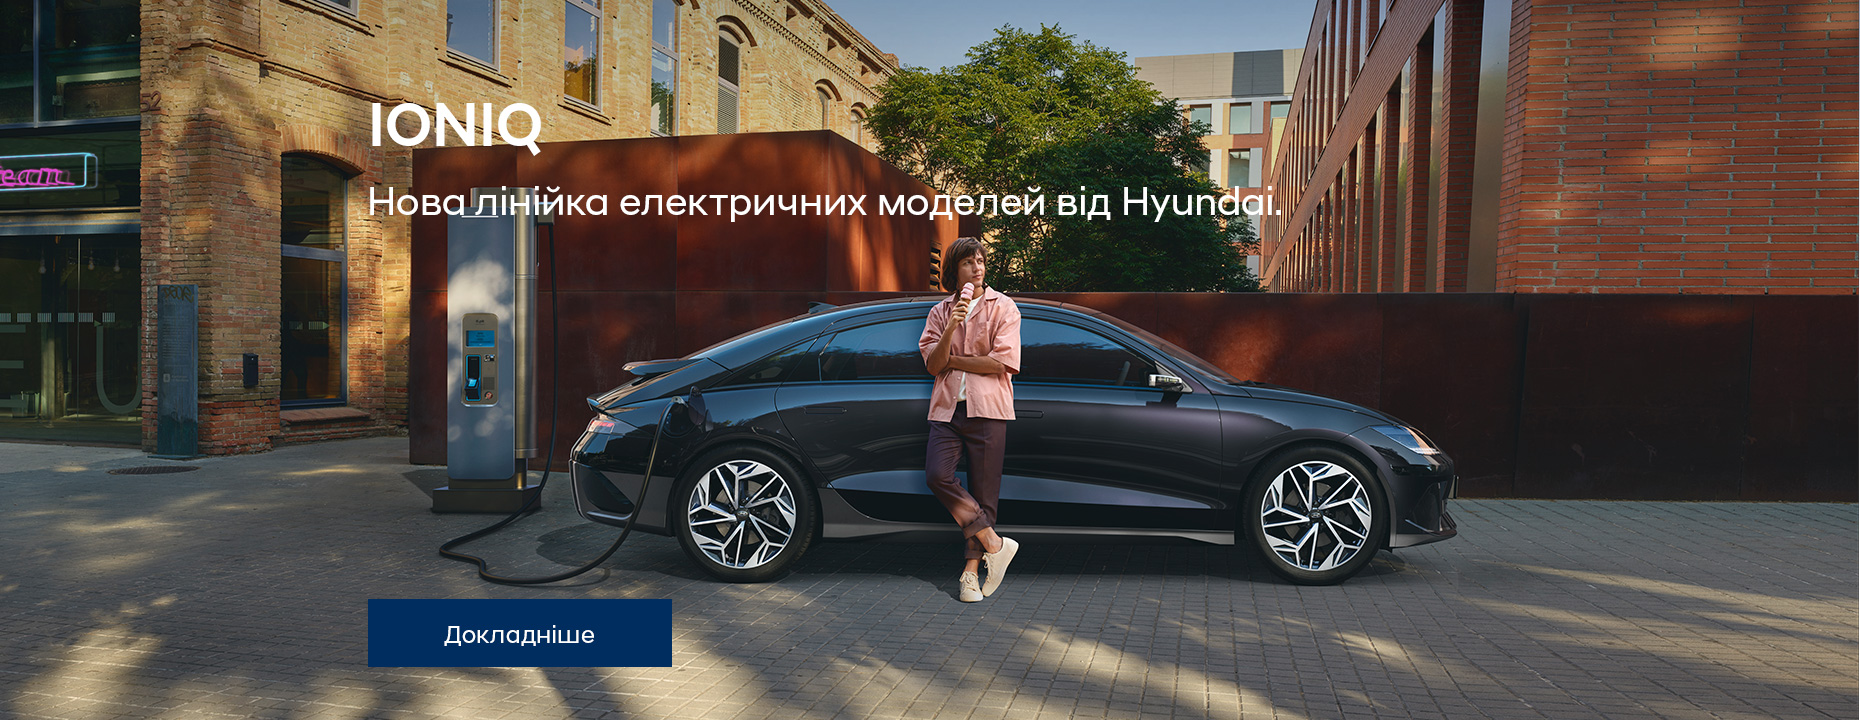 Автомобілі Hyundai м. Тернопіль | Купити новий Хюндай | Автопалац Тернопіль - фото 28